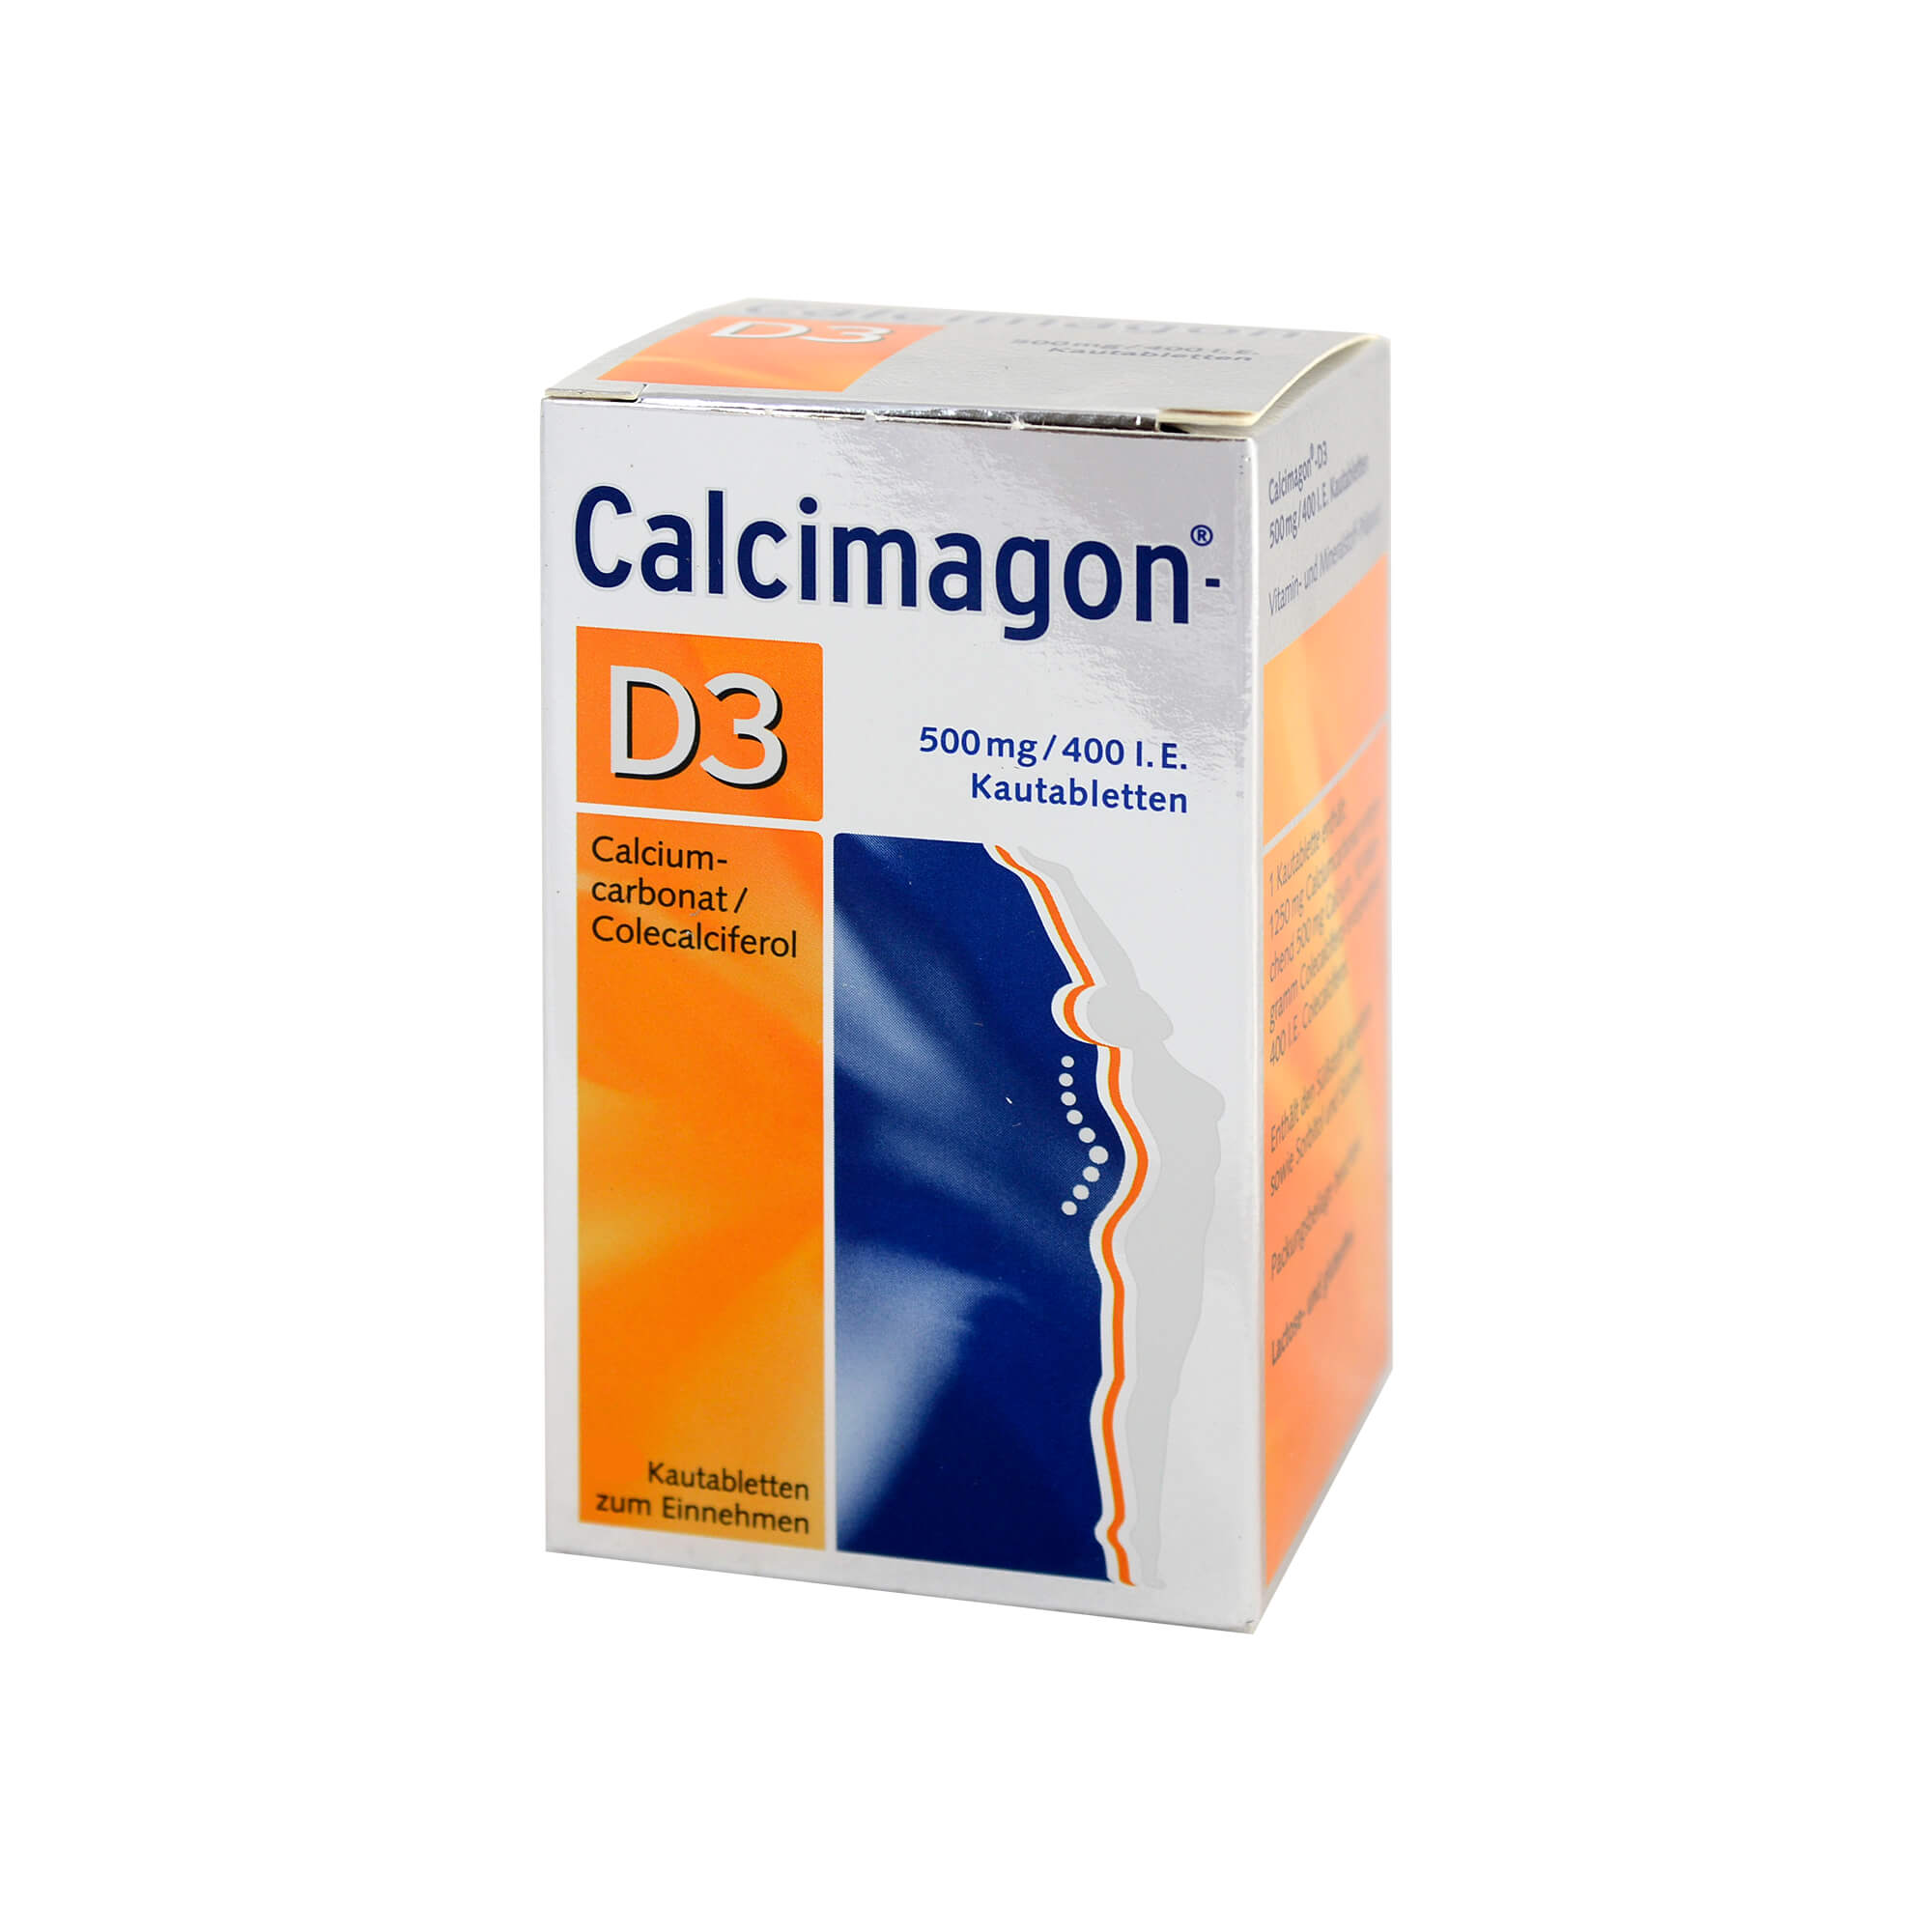 Als Vitamin D- und Calciumsupplement zur Unterstützung einer spezifischen Therapie und zur Prävention und Behandlung der Osteoporose.